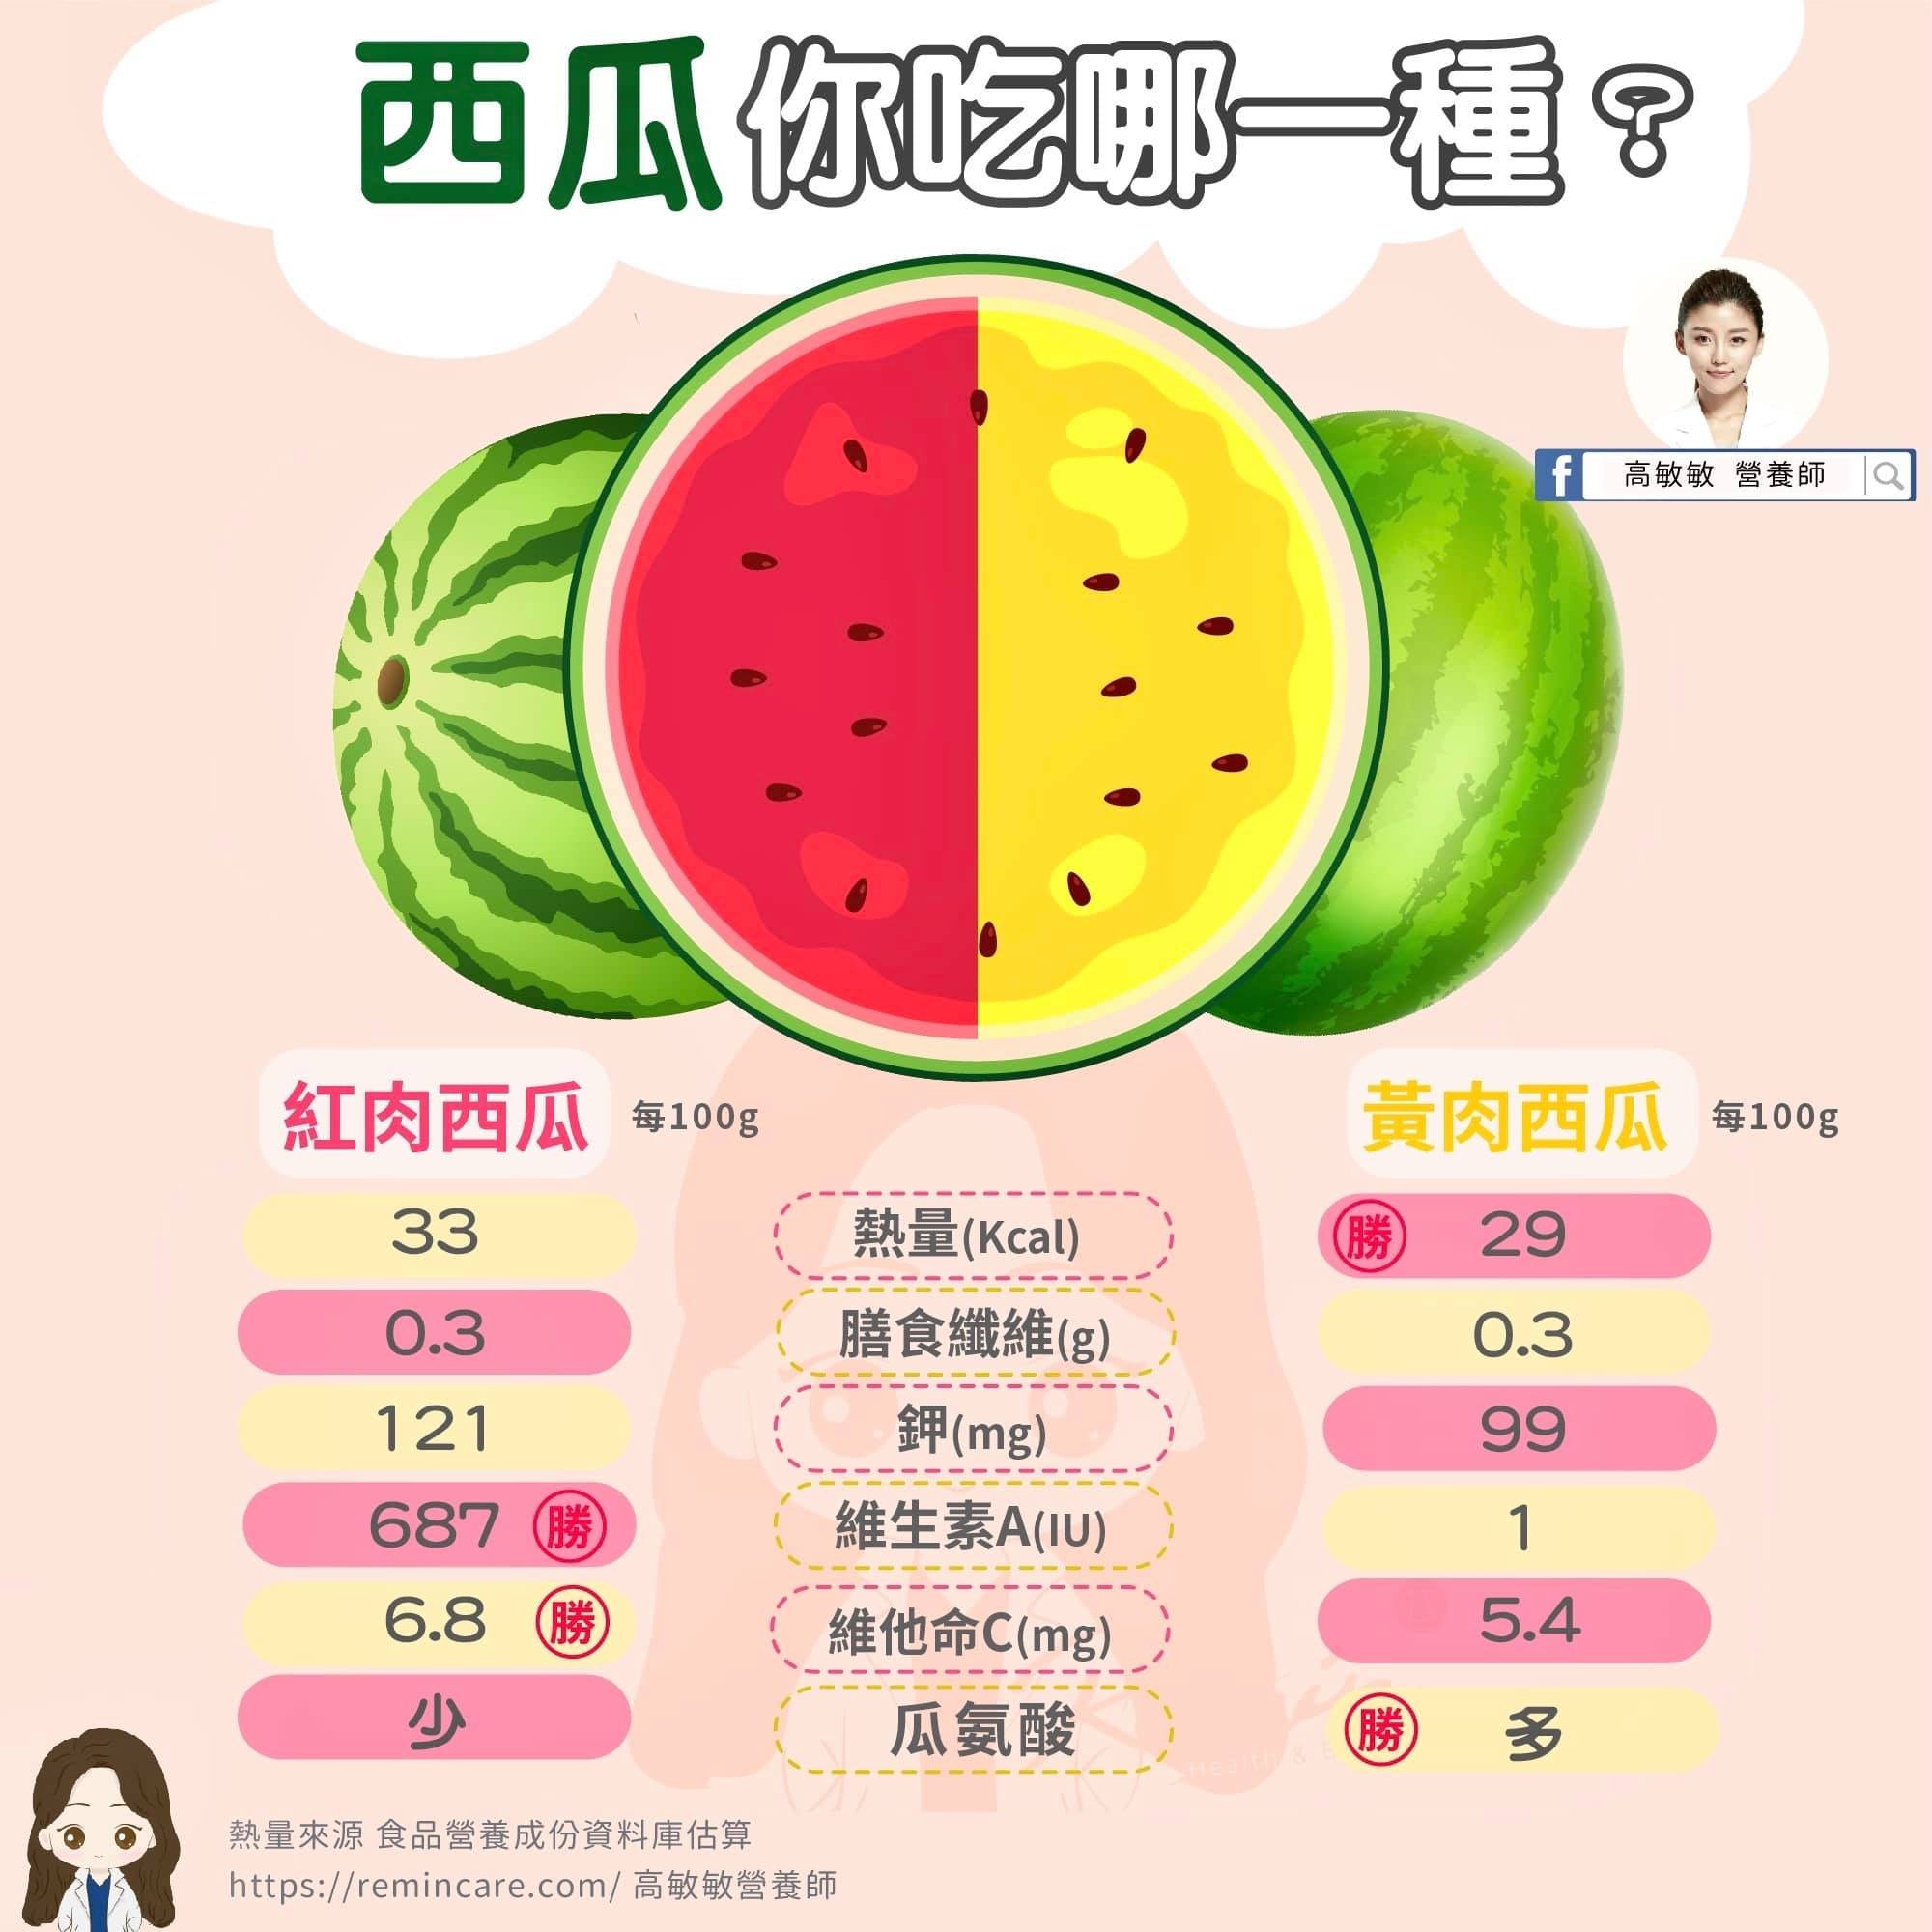 营养师用一张图带你看懂小玉pk红肉西瓜的营养价值